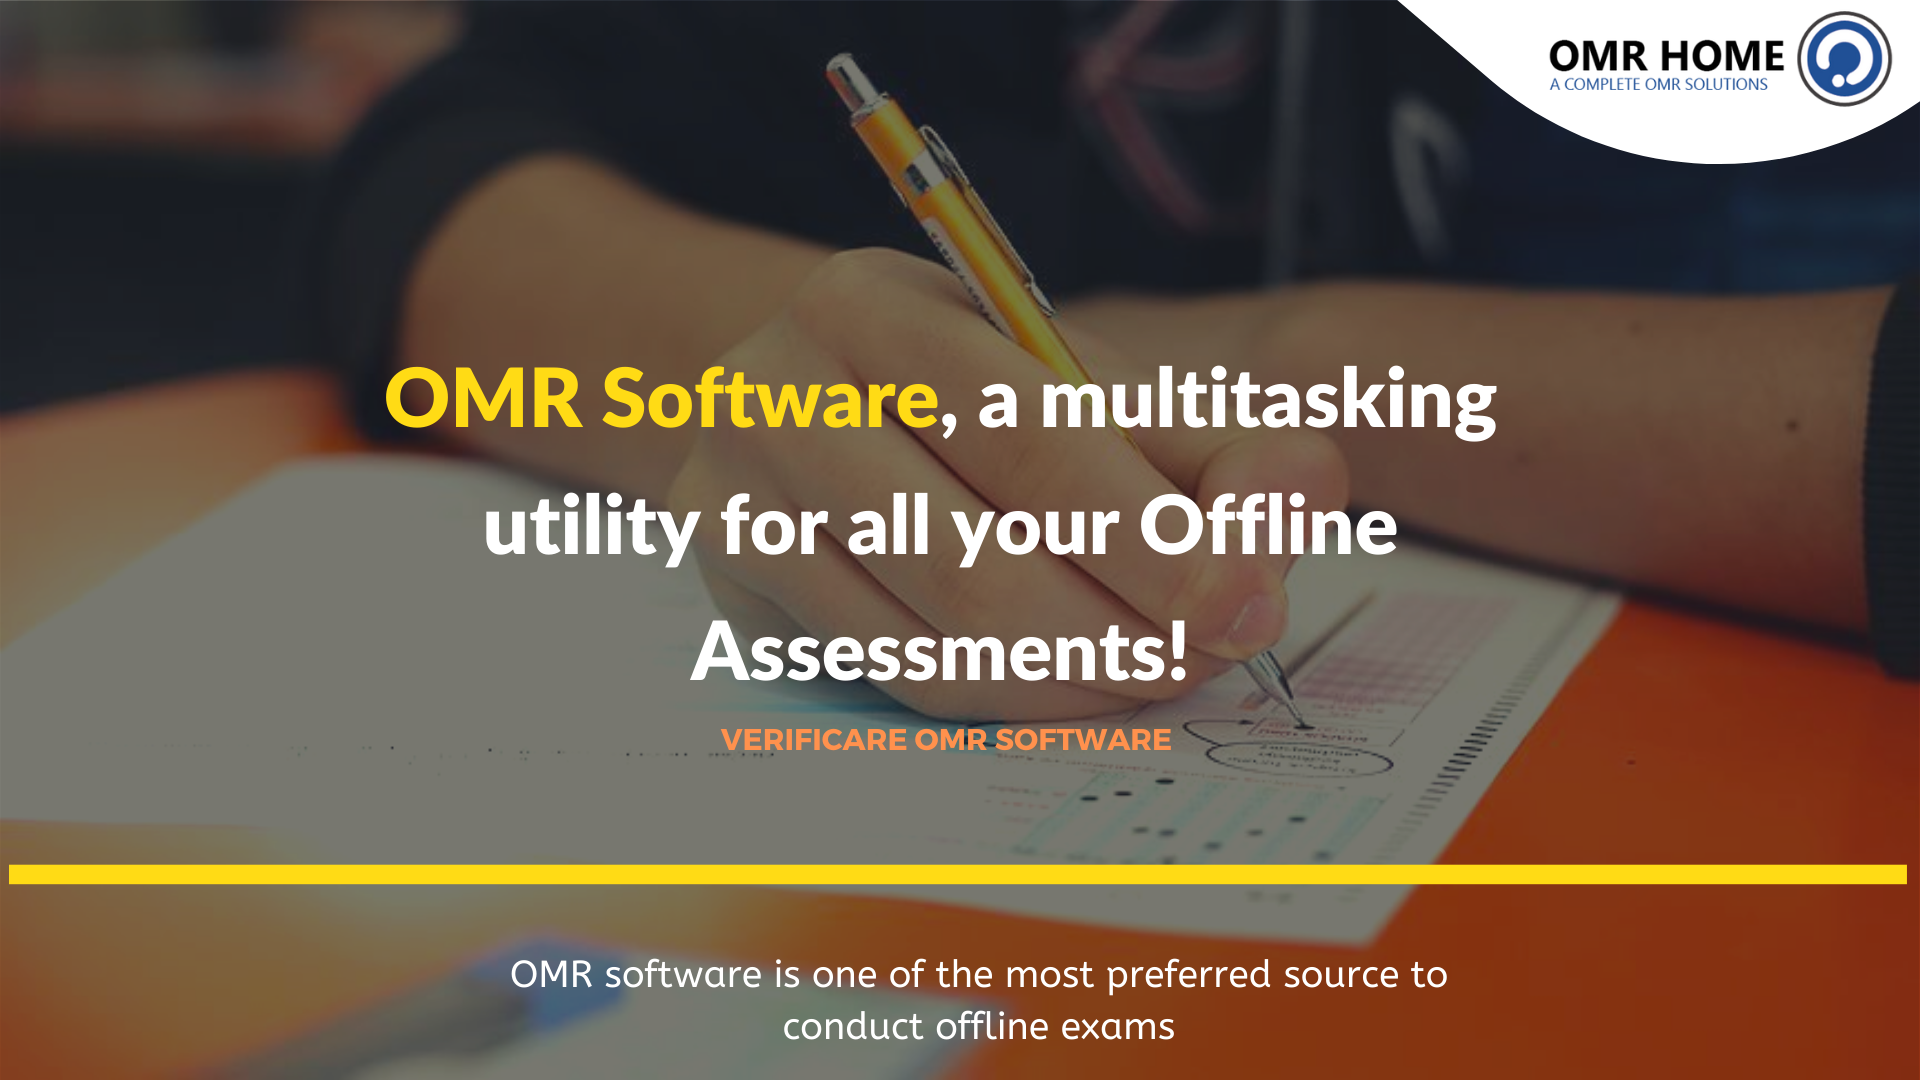 Best OMR Software